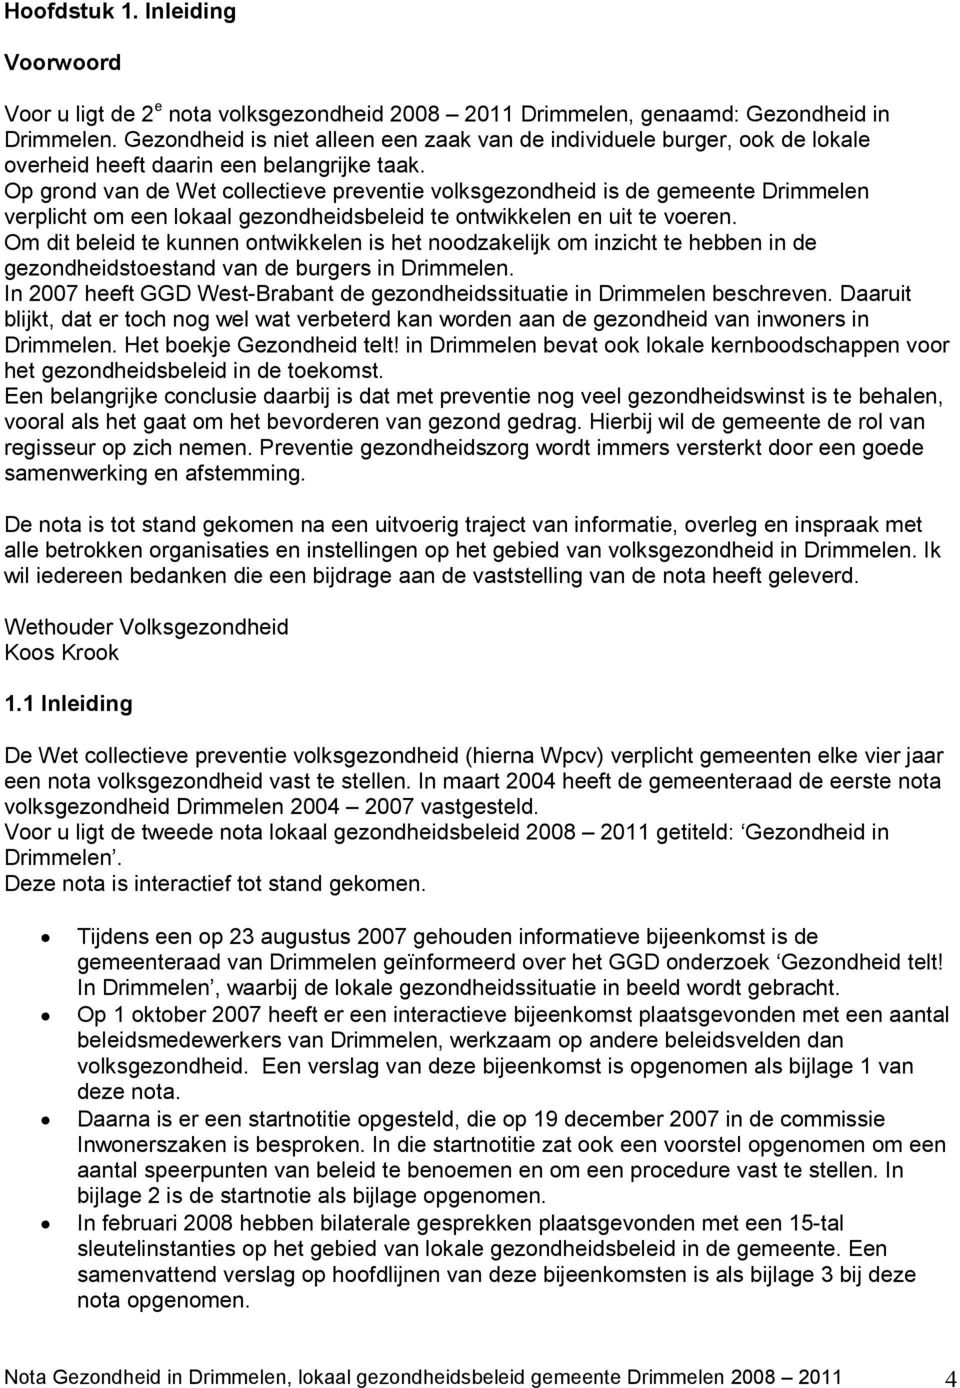 Op grond van de Wet collectieve preventie volksgezondheid is de gemeente Drimmelen verplicht om een lokaal gezondheidsbeleid te ontwikkelen en uit te voeren.